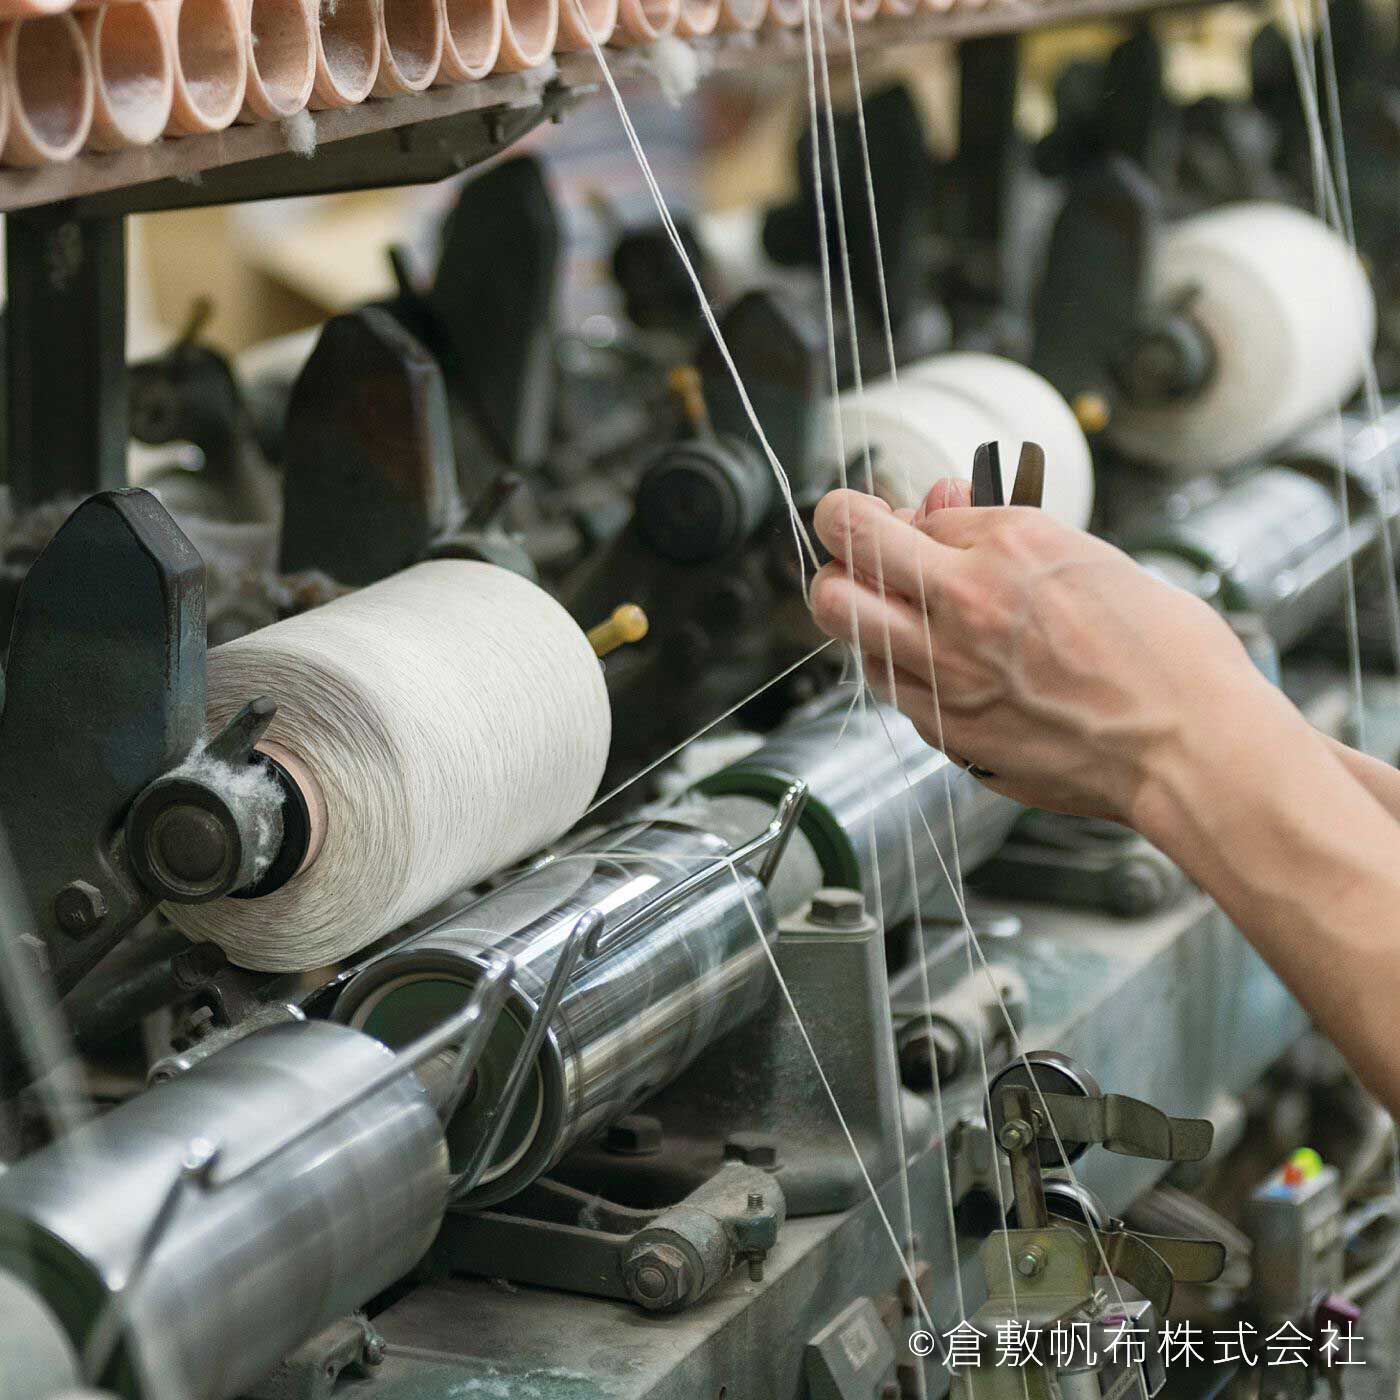 el:ment|el:ment　倉敷帆布と本革遣い　必需品をまとめられる　軽やかショルダーバッグ〈スズ〉|あらゆる工程において重要なのは、職人の技術と感覚。たとえば数本の原糸を1本の糸に合わせる工程で、糸の終わりを次の糸に手作業で継ぐ際、いかに継ぎ目を目立たなくするかが技の見せどころだそう。